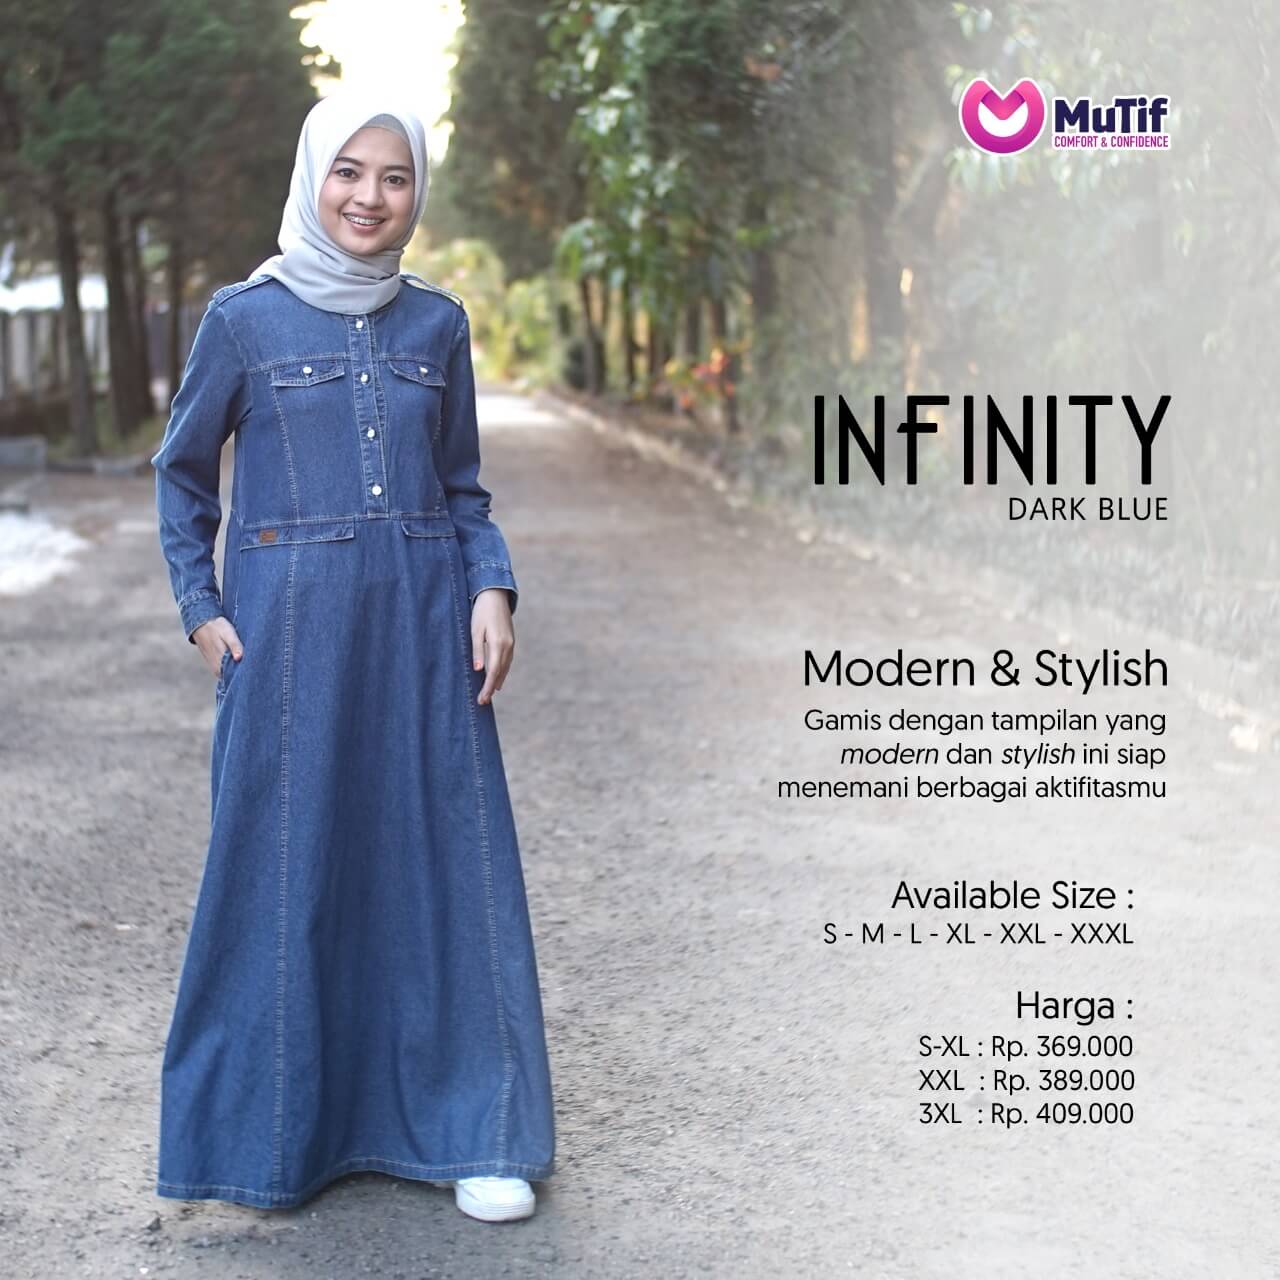 Baju Wanita Gamis Mutif Terbaru Dan Trendy 2020 Mtif Infinity A Dark Blue Lazada Indonesia